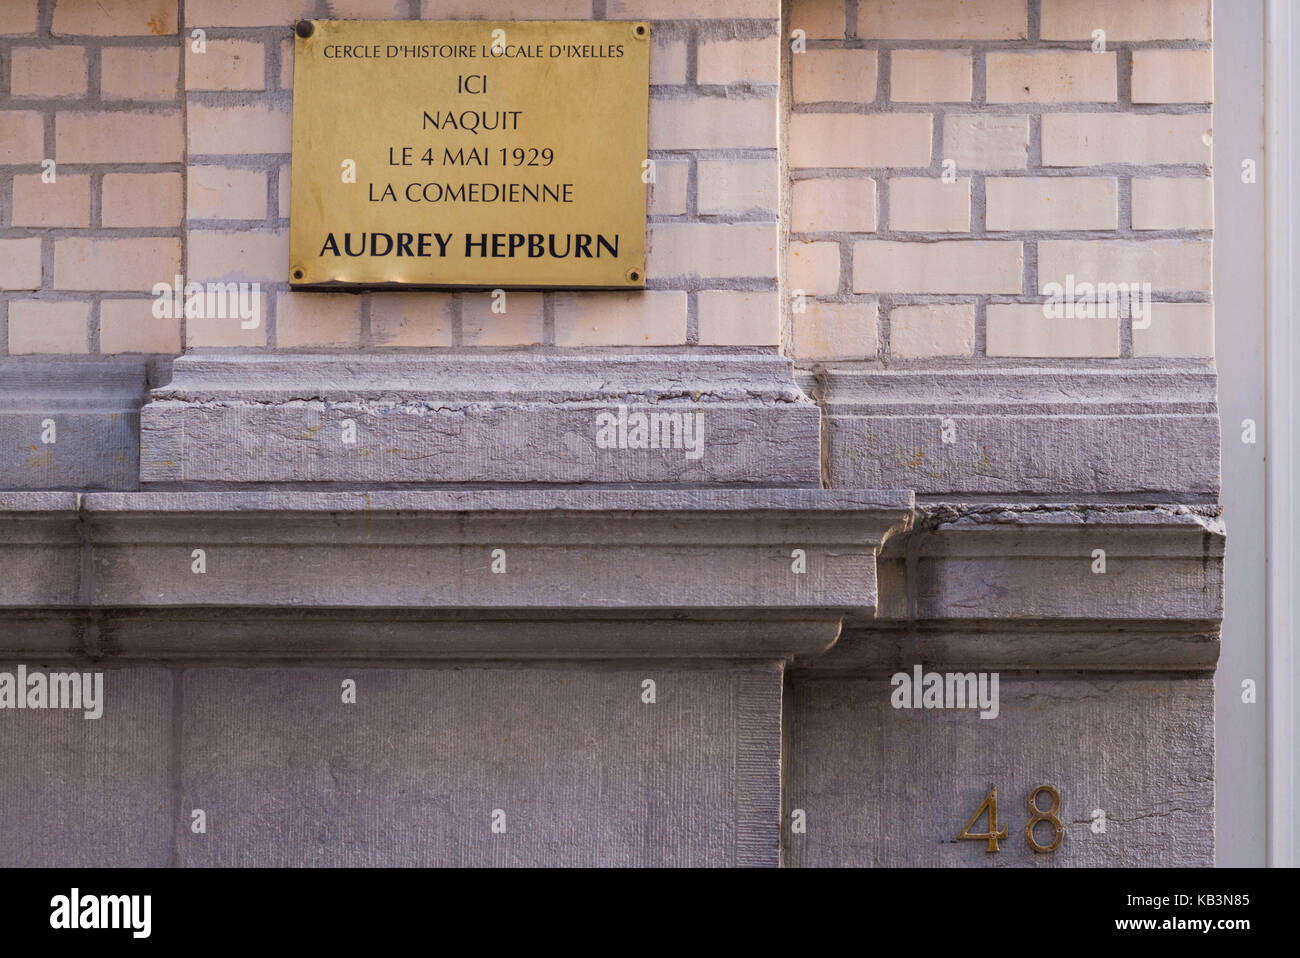 Belgique, Bruxelles, berceau de l'actrice américaine Audrey Hepburn, signe sur sa maison familiale de la rue keyenveld Banque D'Images